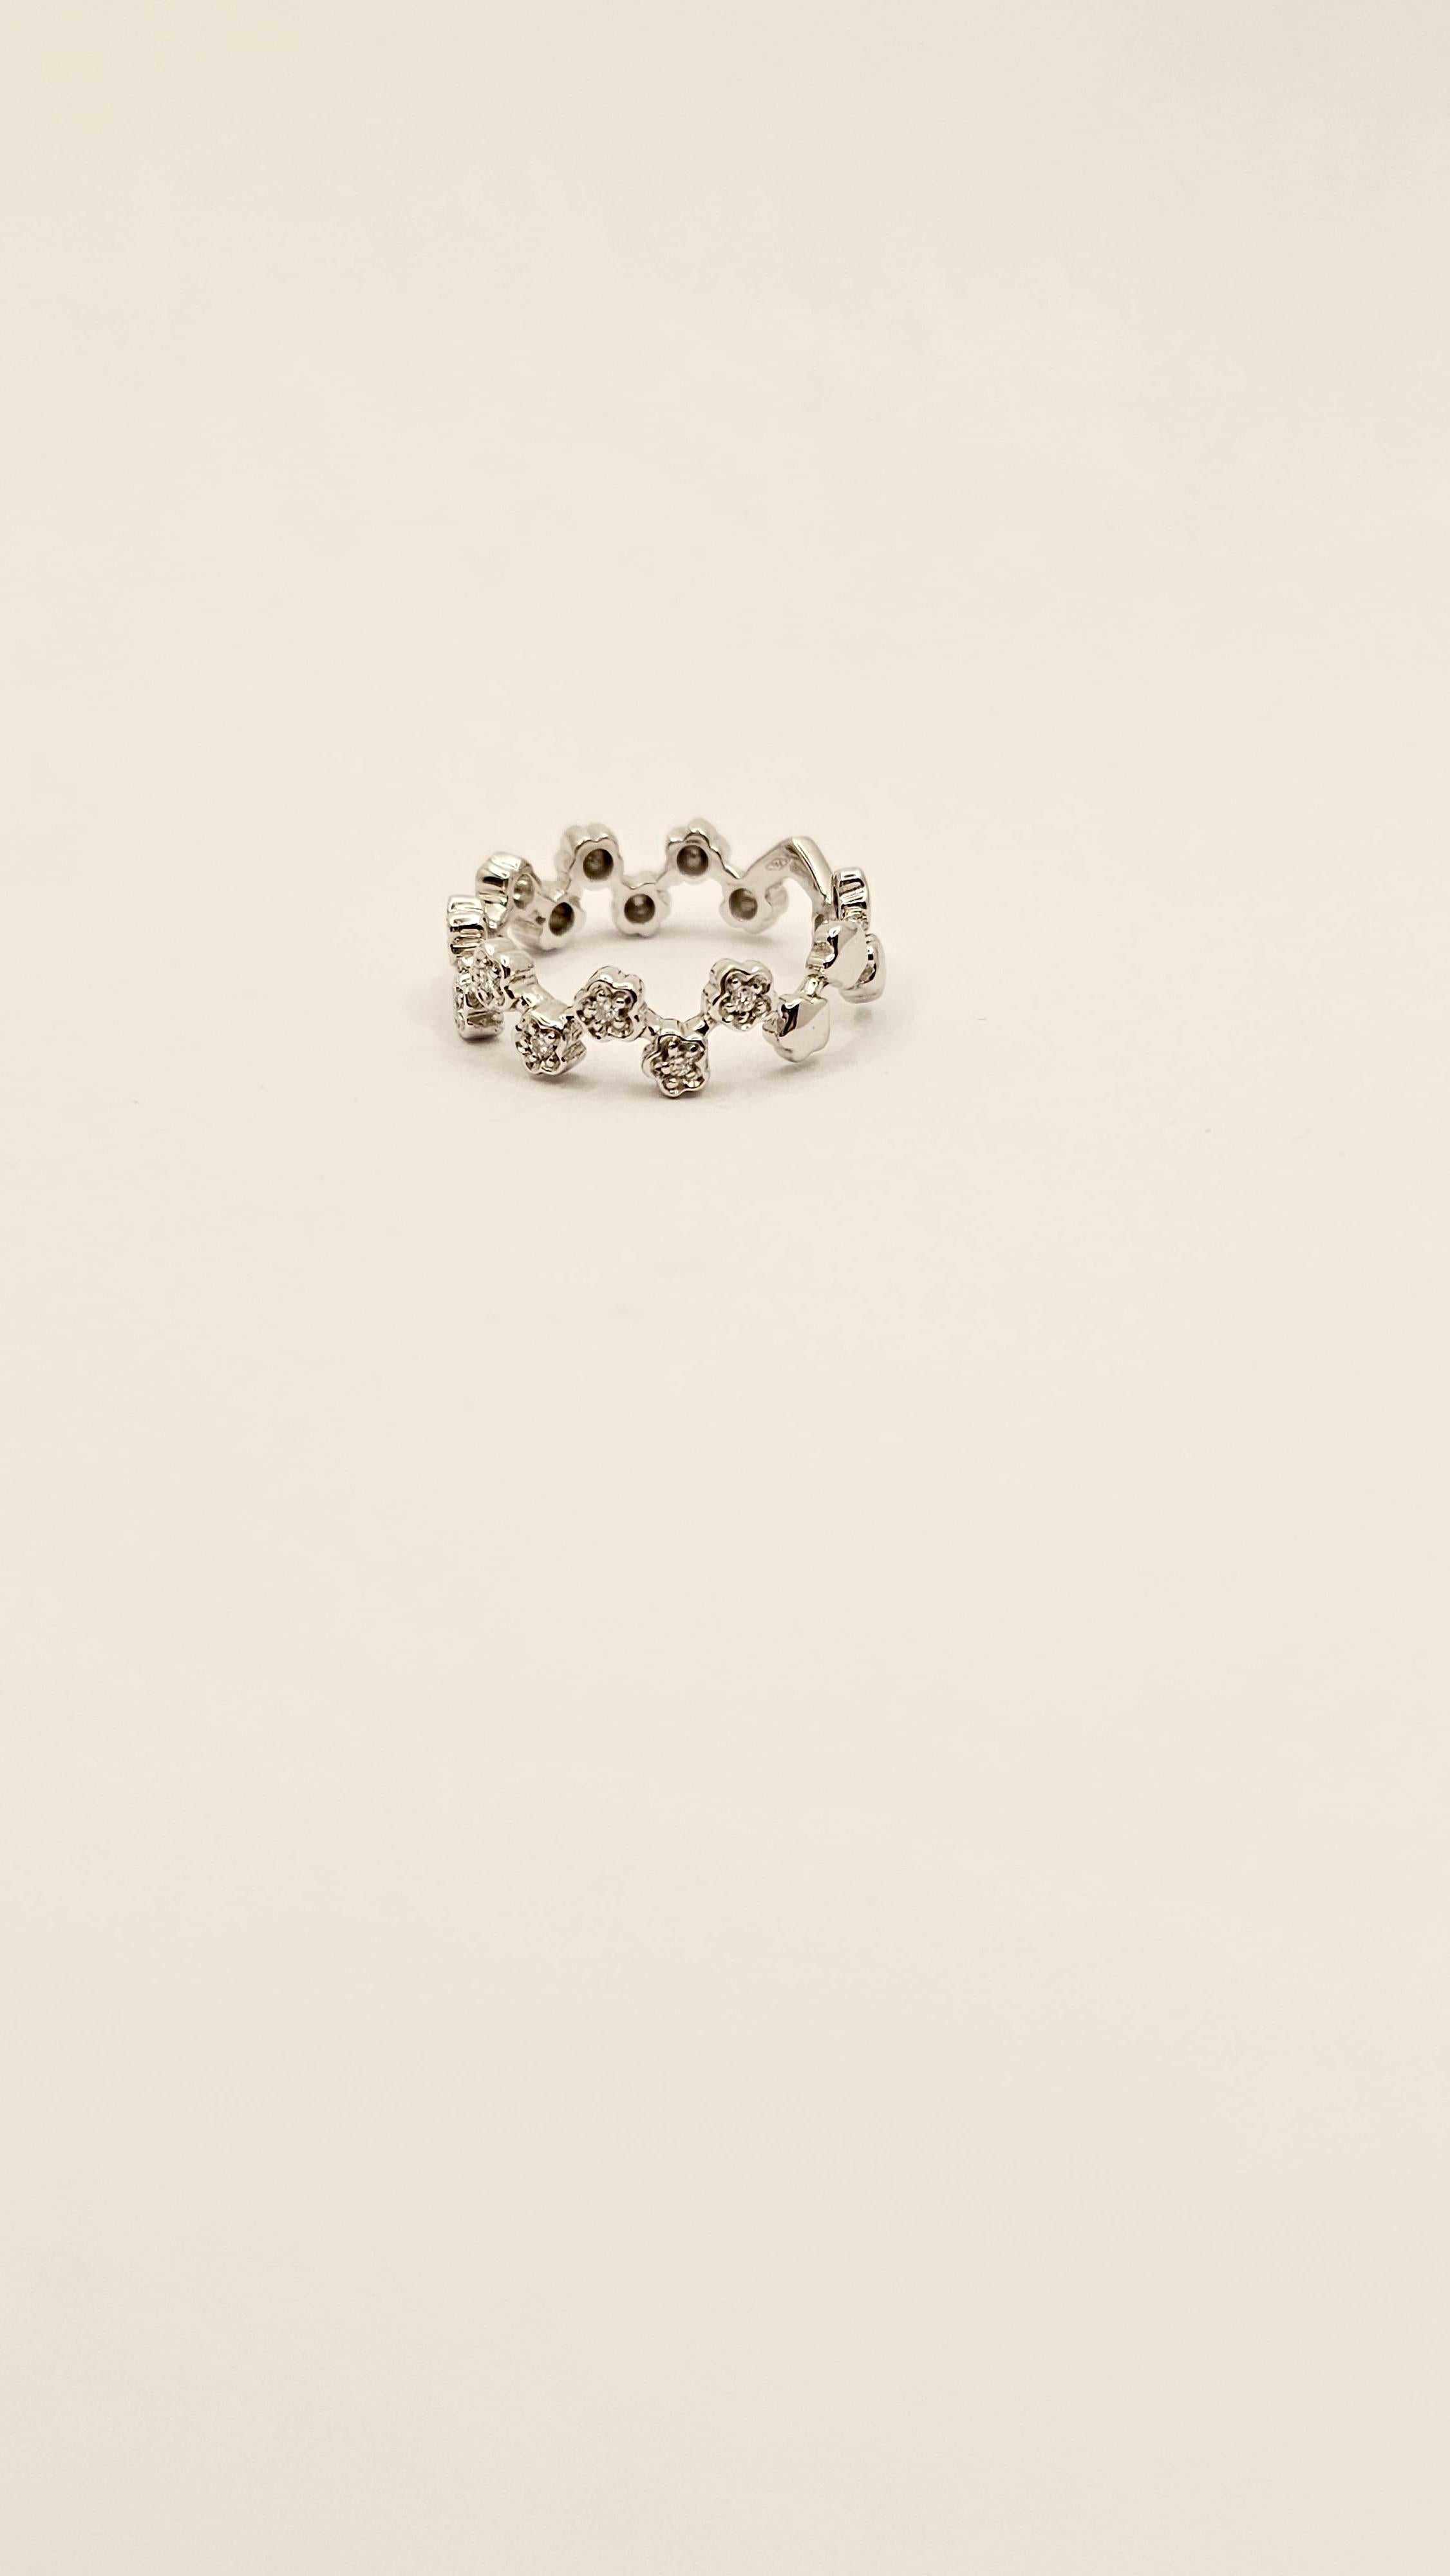 Una fedina a motivo floreale in oro bianco 18 Kt e Diamanti.
Questo anello è creato da piccoli fiori, ognuno di essi ha un Diamante al centro.
Nella parte dietro della fascia i fiori sono in oro, senza Diamanti, in modo da poter regolare la